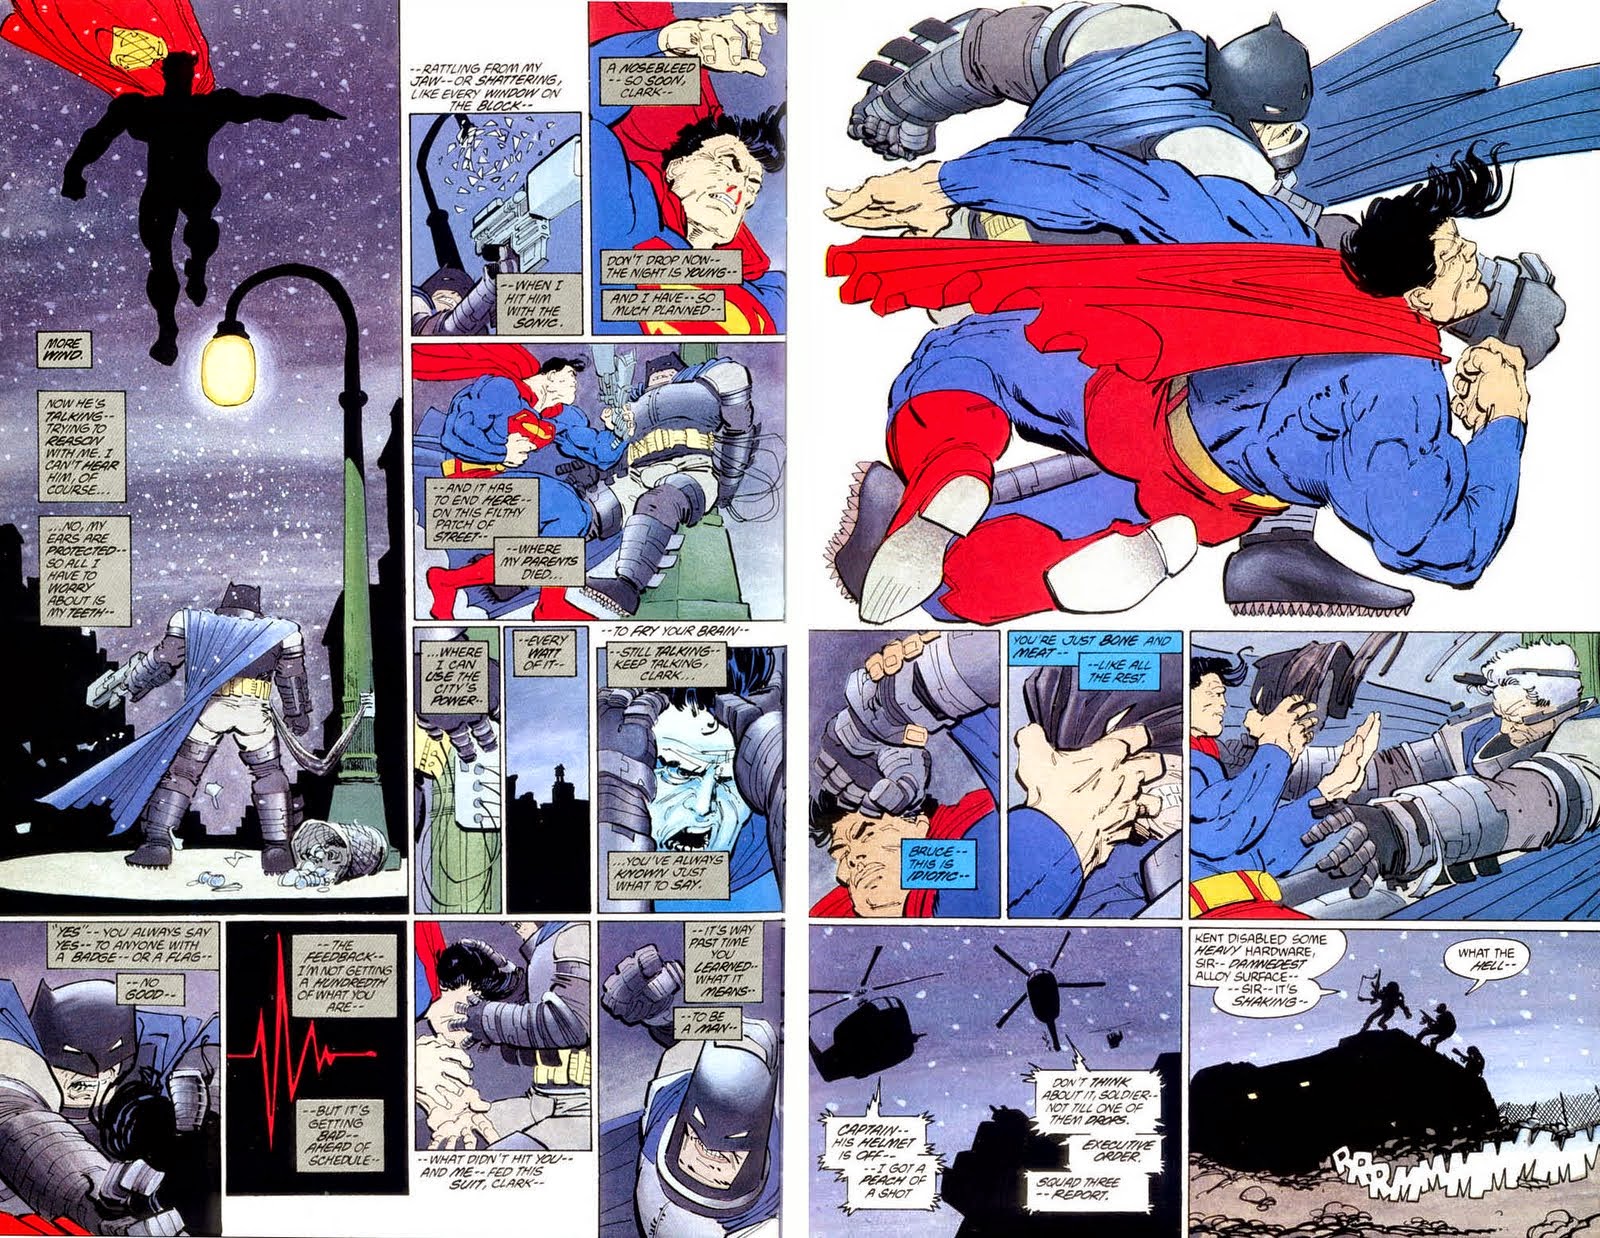 La Nuez: Frank Cho recrea la pelea entre Batman y Superman de The Dark  Knight Returns